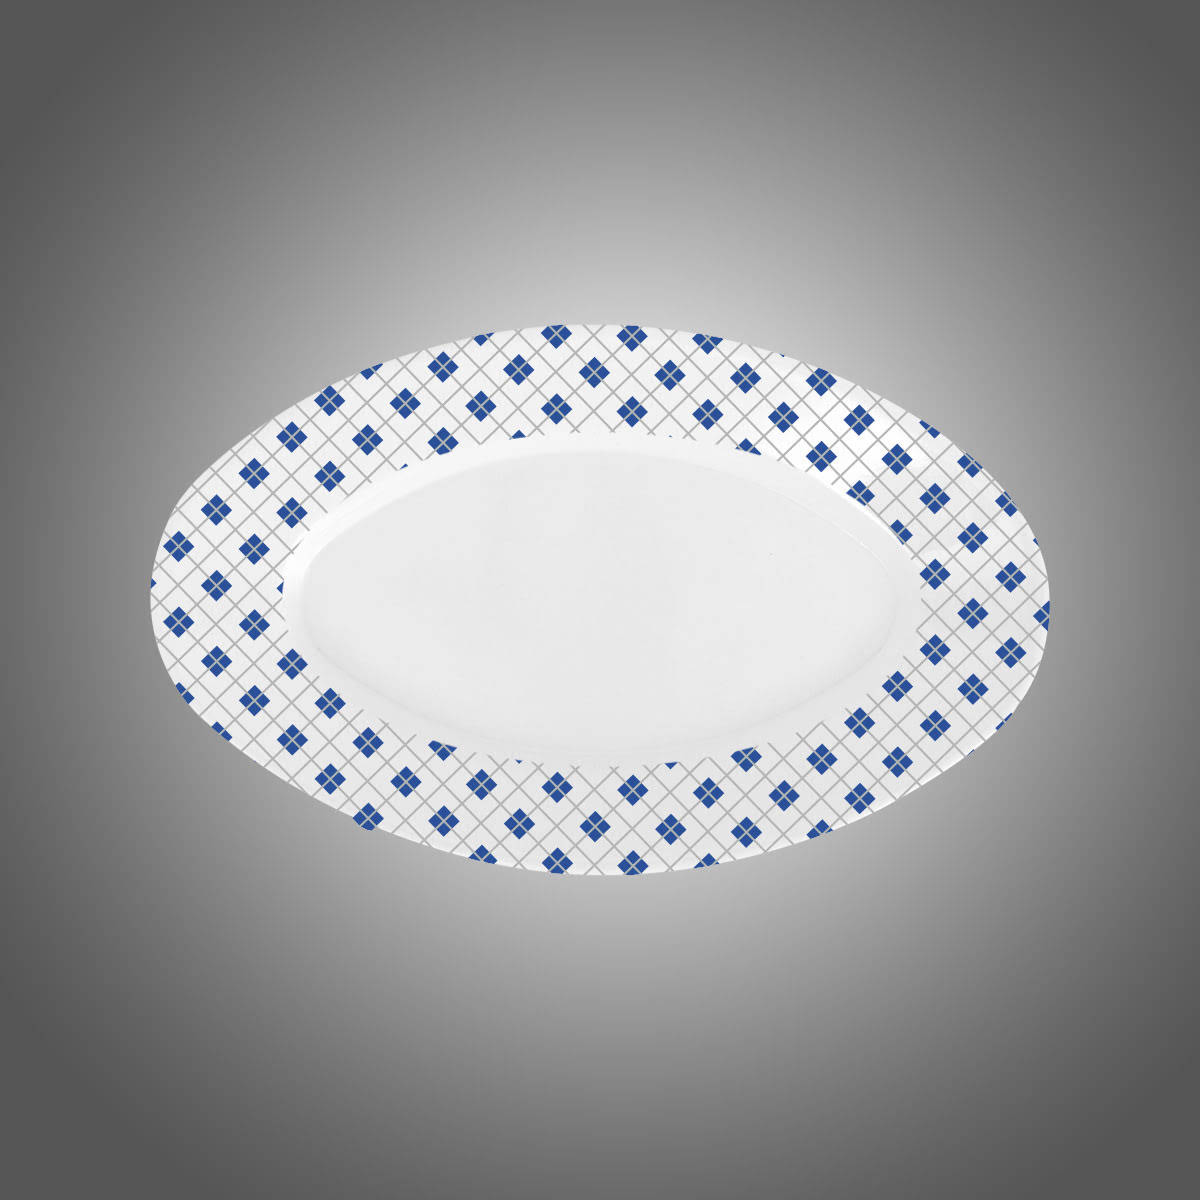 16 5 cm x 26 cm ölçülerinde melaminden üretilmiş beyaz ve desenli kayık tabak